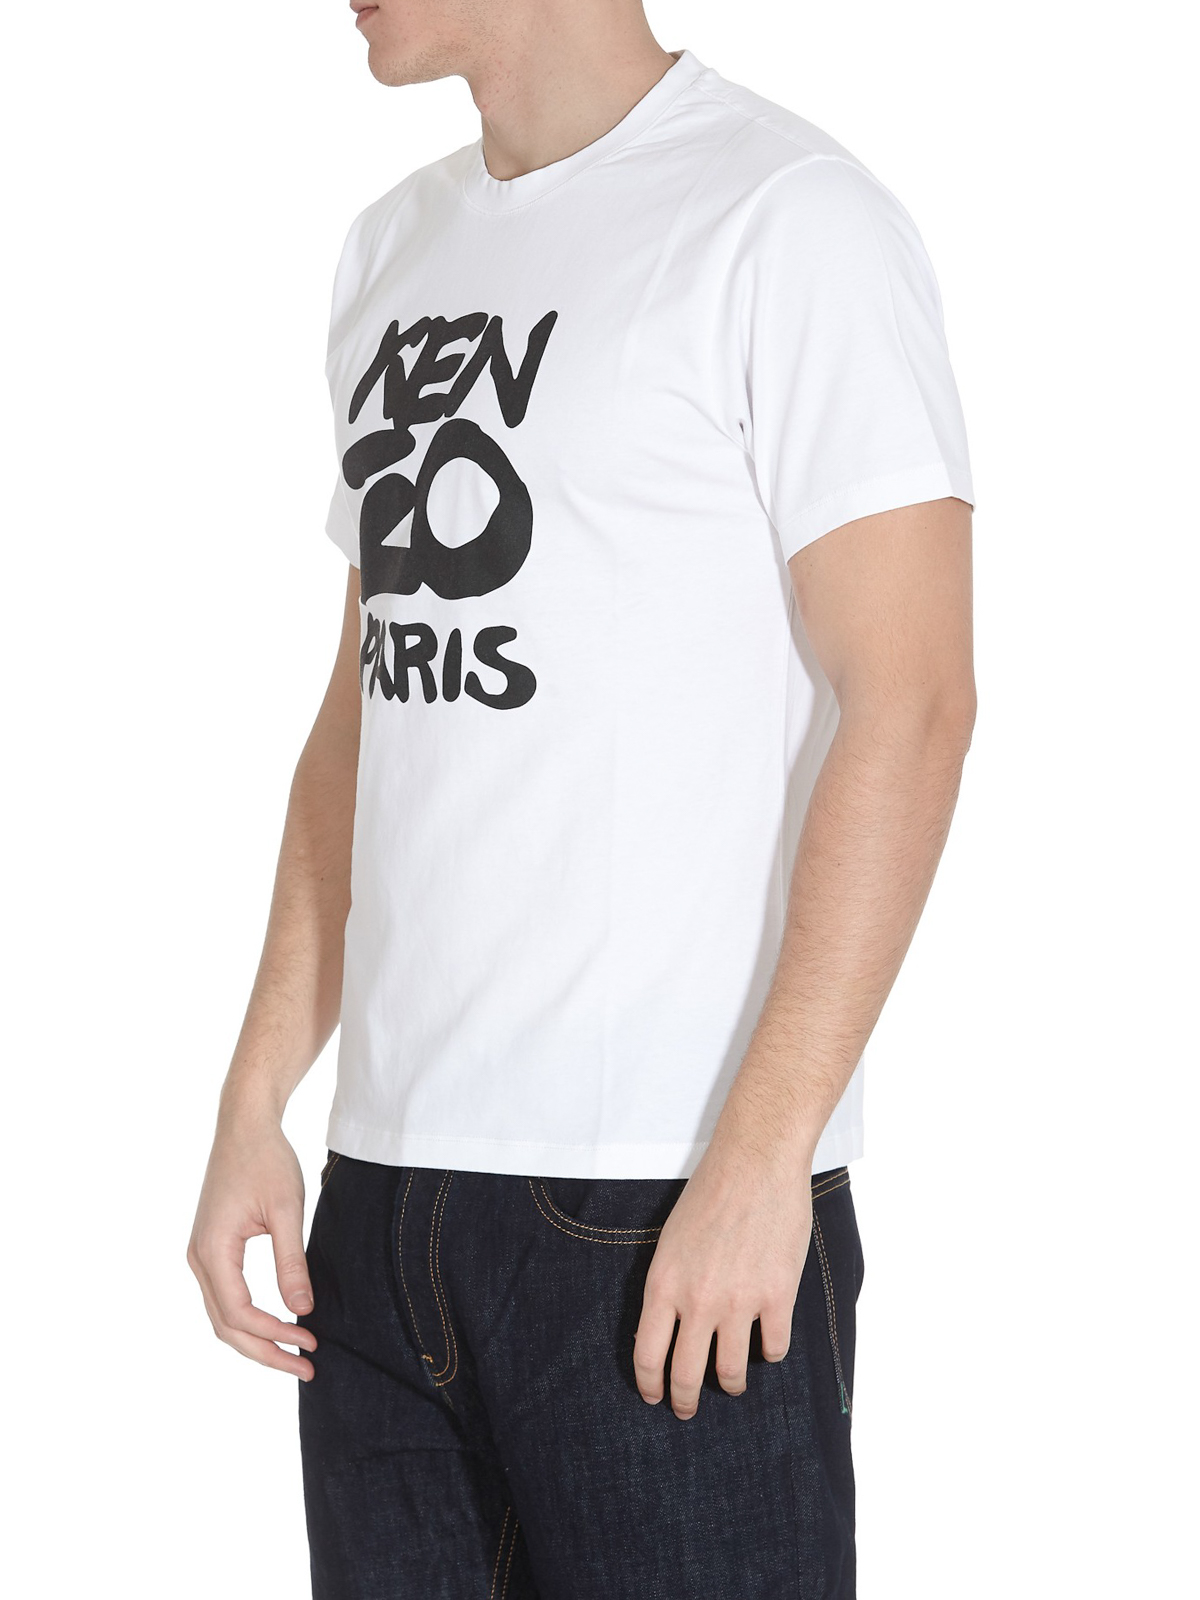 fusie honing Interpunctie Tシャツ Kenzo - Tシャツ - Kenzo Paris - FA55TS0184SA01 | iKRIX.com